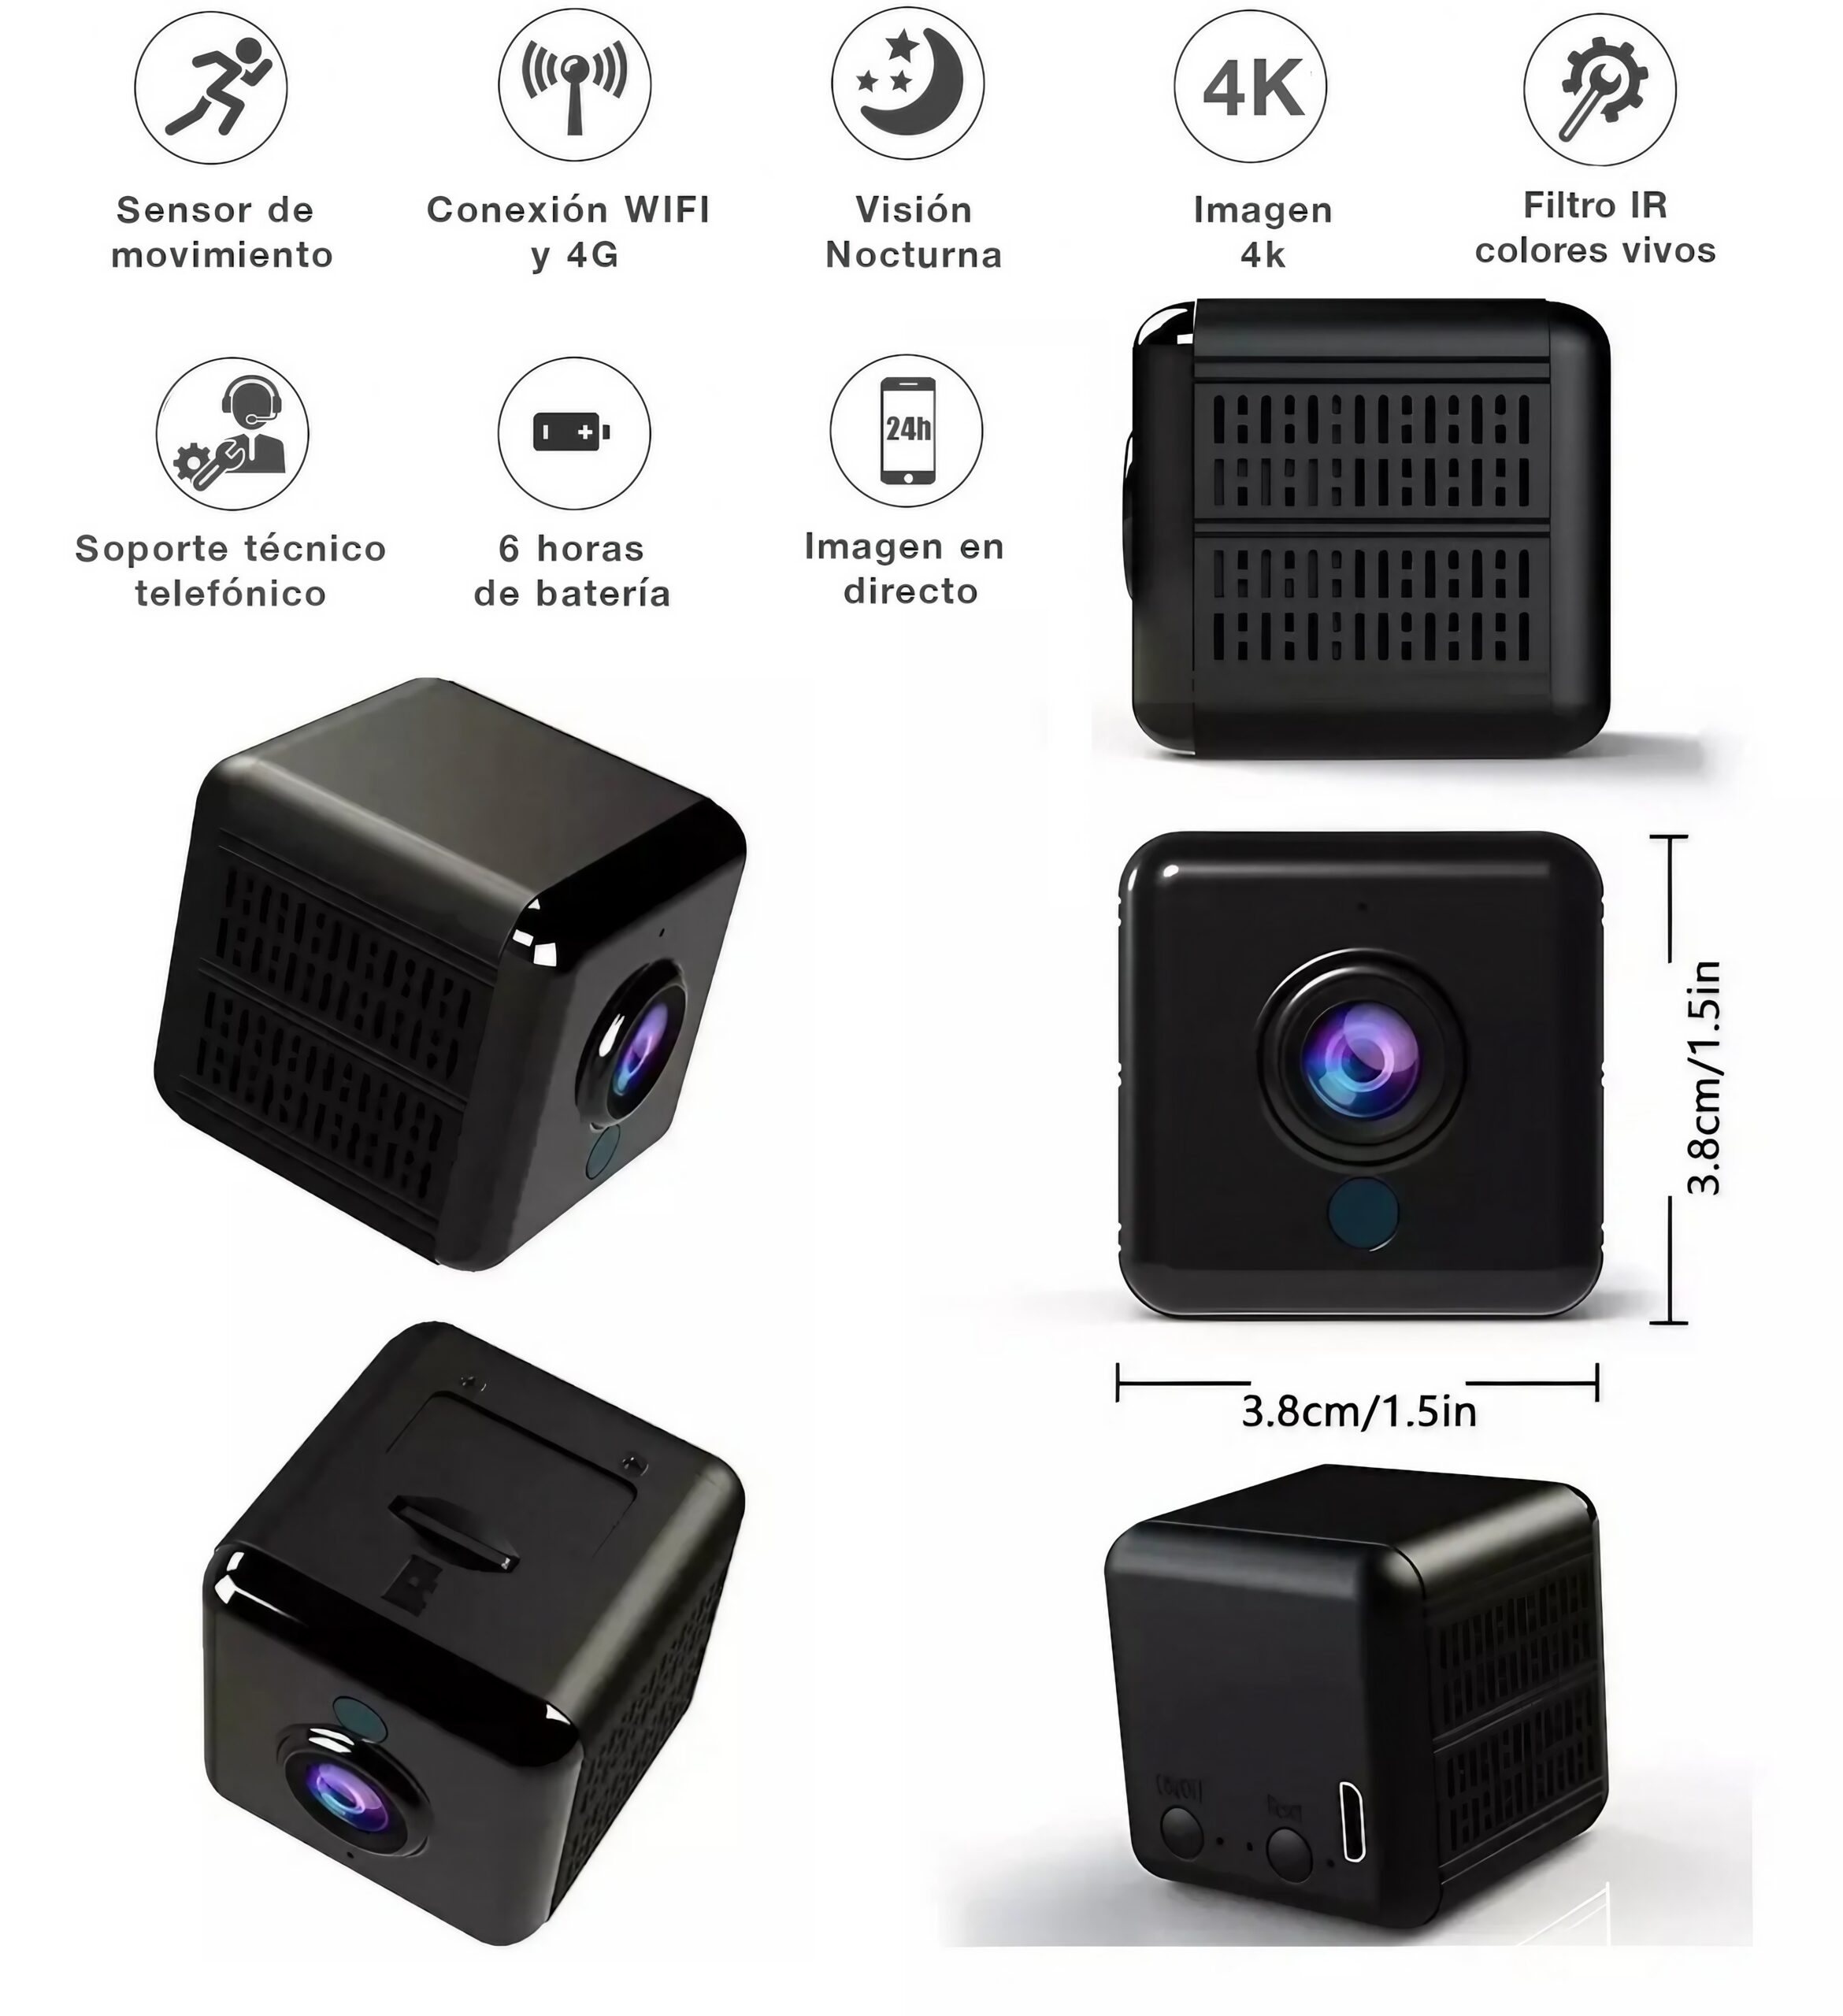 Mini Cámara Espía 4k Wifi, Detección de Movimiento, Visión Nocturna,  Control Remoto por APP con Ranura